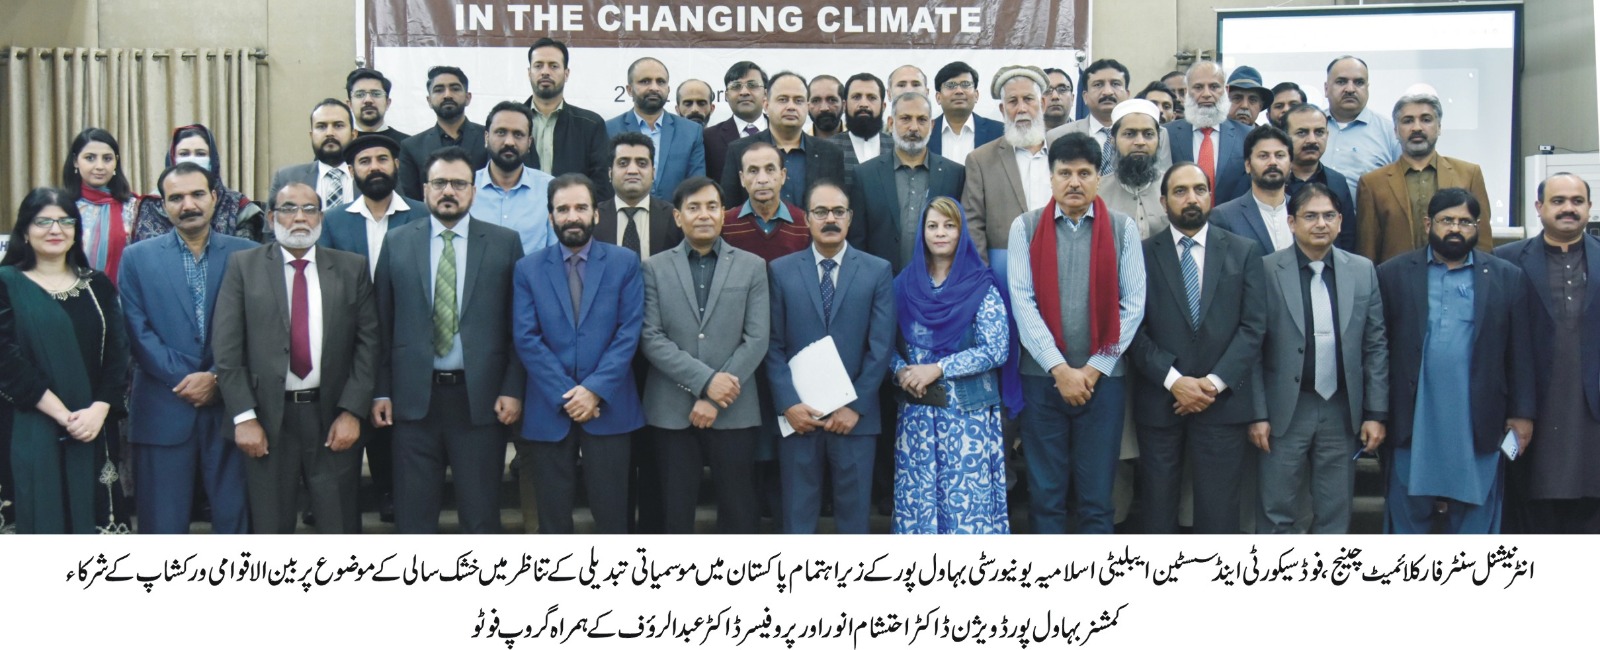 Climate Change conf (urdu 1)